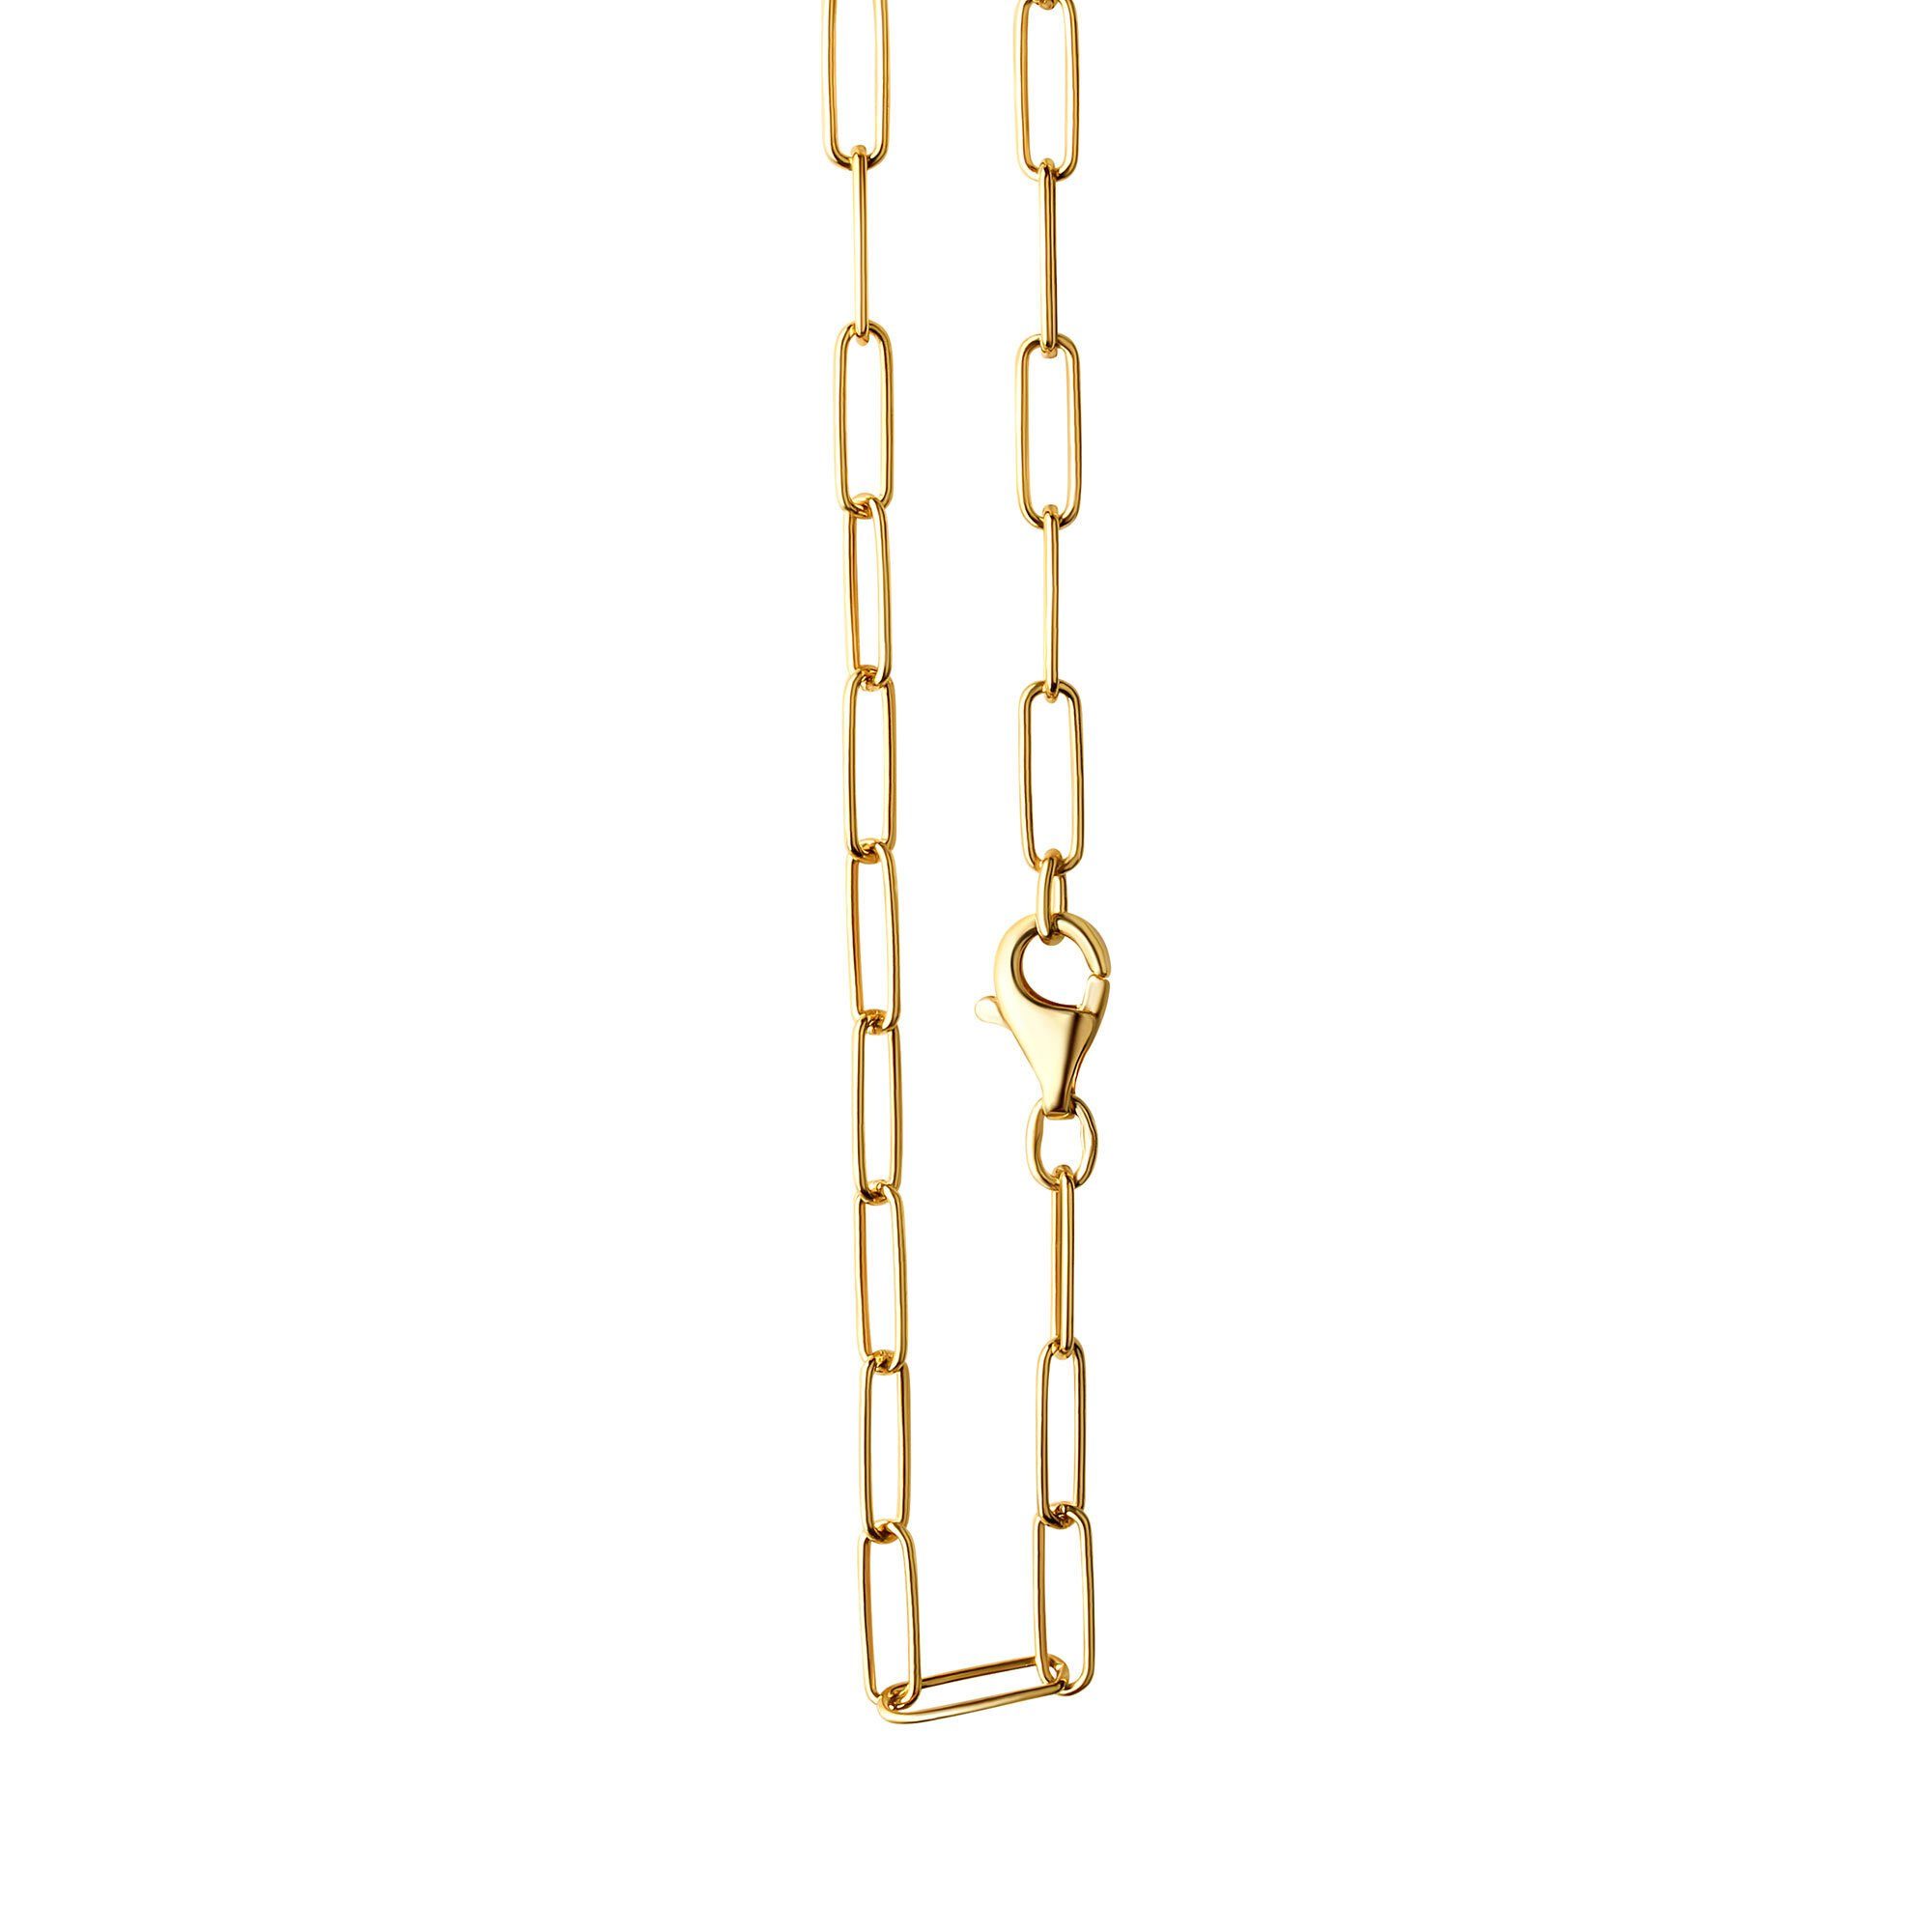 Vivance Collierkettchen 925/- Sterlingsilber vergoldet Gliederkette glanz 60 cm